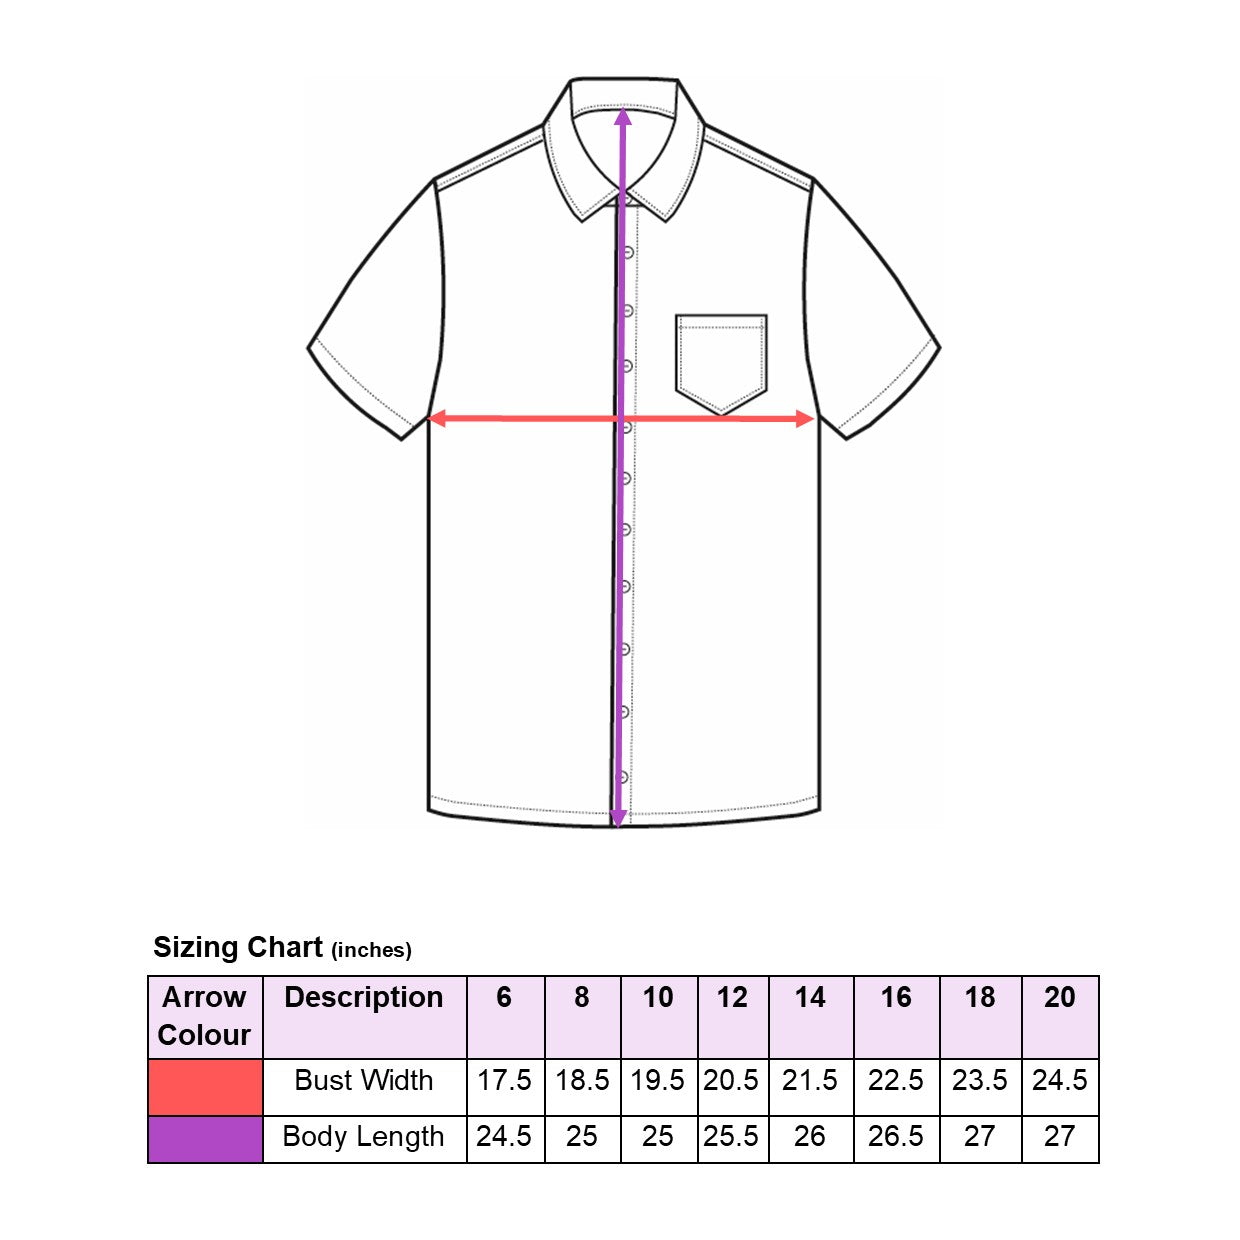 shirt sizing chart